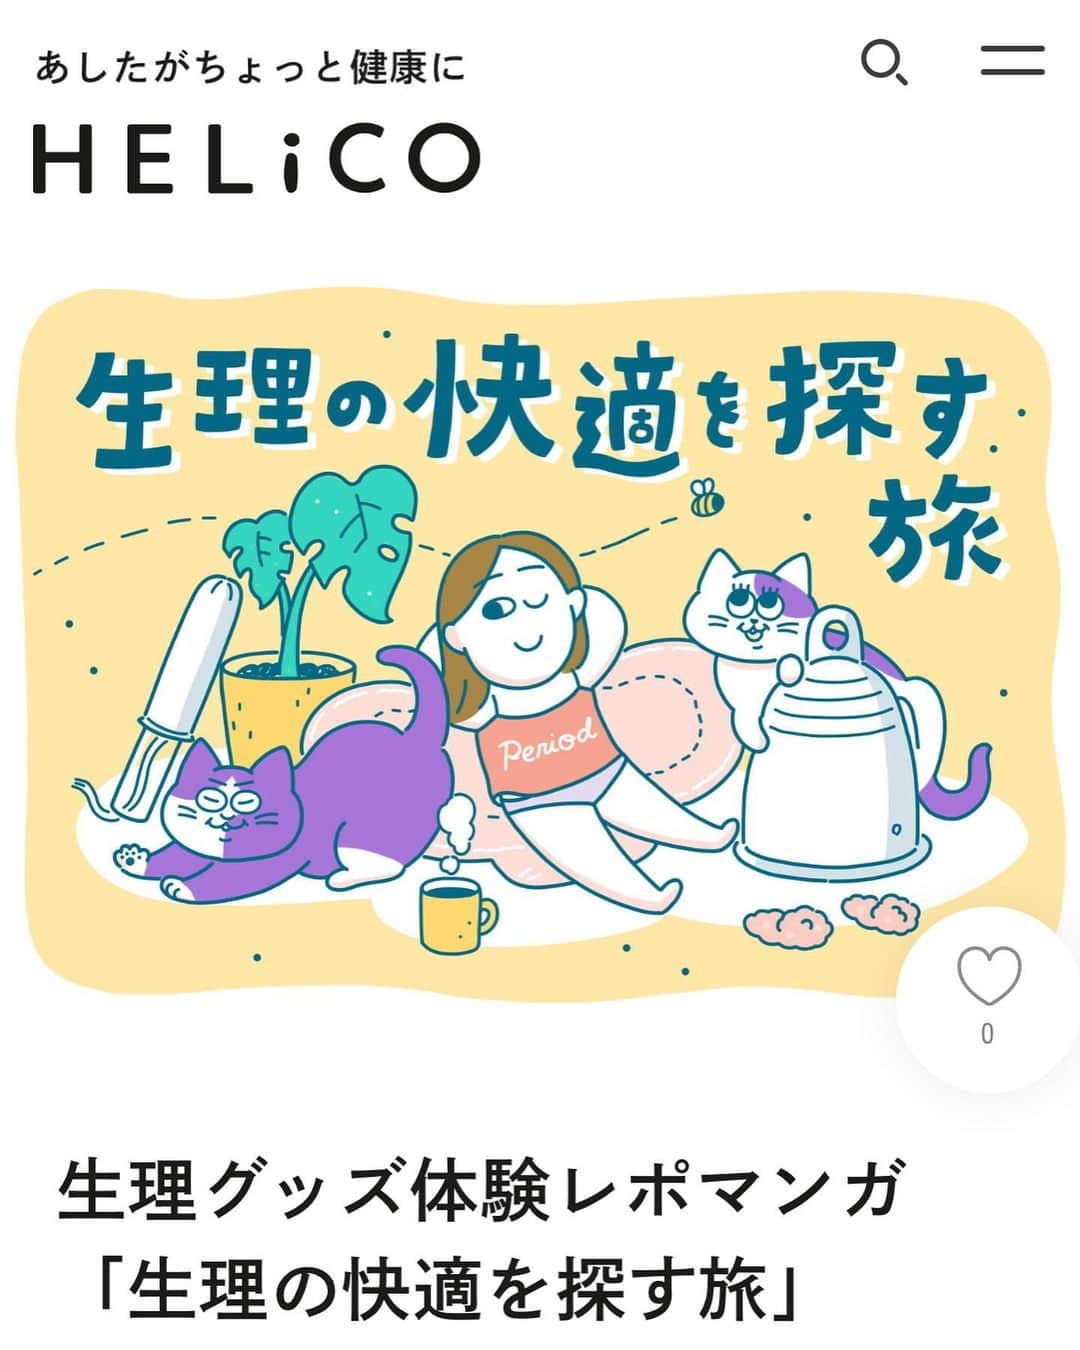 澤村 花菜のインスタグラム：「HELiCO (@helico_aisei )で、生理グッズの体験レポマンガを描きました❣️  最近私がはまっている吸水ショーツの話と、ずっと気になっていた月経カップに挑戦したことを描いてます。  カップは怖かったけど挑戦してよかったー！  人それぞれ違うから、他の人はどうしてるのかな？って感じで読んでもらえたらうれしいです。(ぜひ男性も！)  インスタだと文字がちっこいので、HELiCOのサイトで大きく見れます🙂 https://helico.life/monthly/230910period-items/  #HELiCO #体験レポマンガ #漫画 #イラスト #生理 #月経カップレポ」